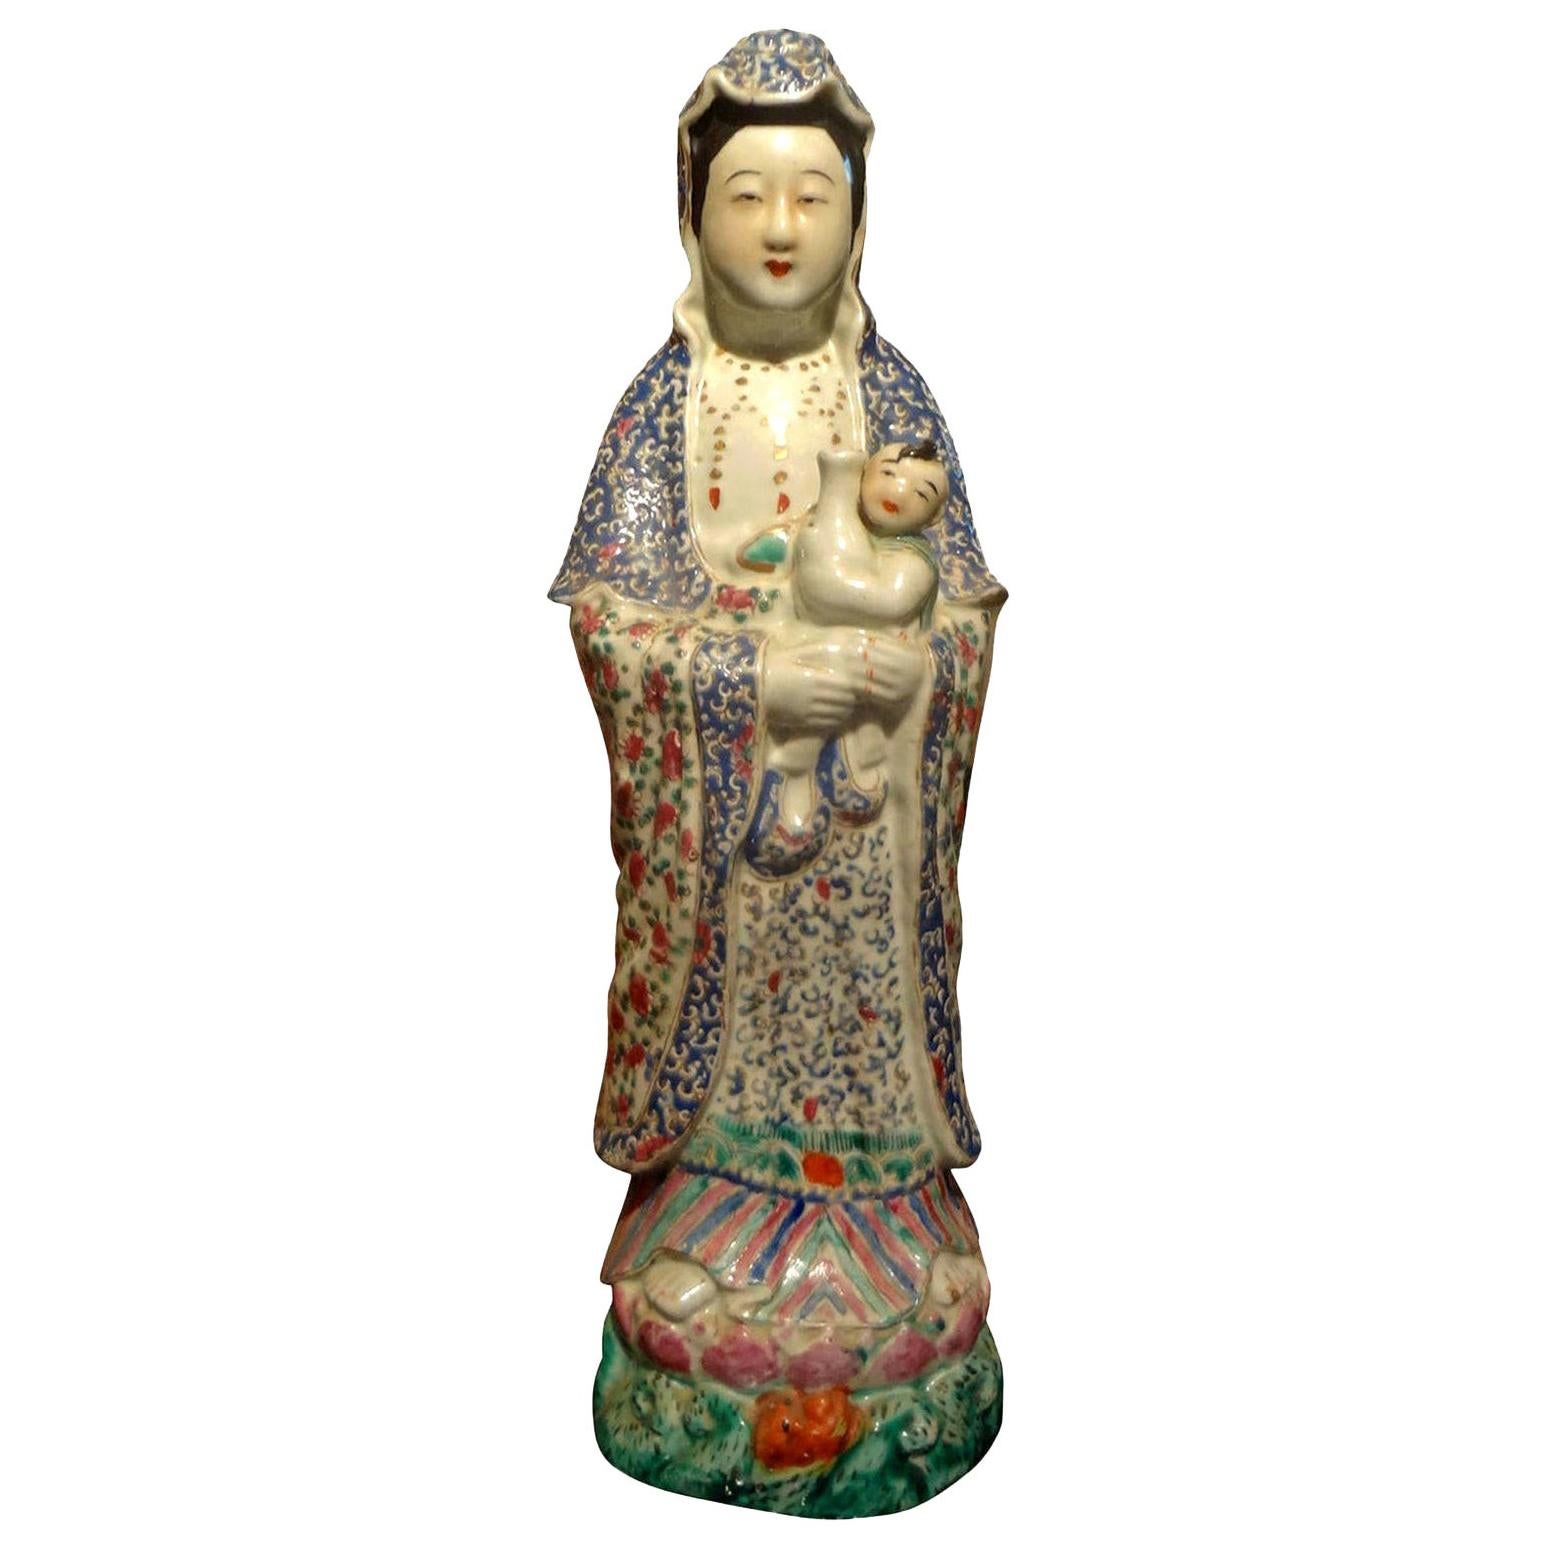 Chinesische Porzellanfigur aus dem späten 19. und frühen 20. Jahrhundert, handdekoriert.
Wunderschön handdekorierte chinesische Porzellanfigur. Diese farbenprächtige, fein detaillierte Figur oder Skulptur stammt aus dem späten 19. und frühen 20.